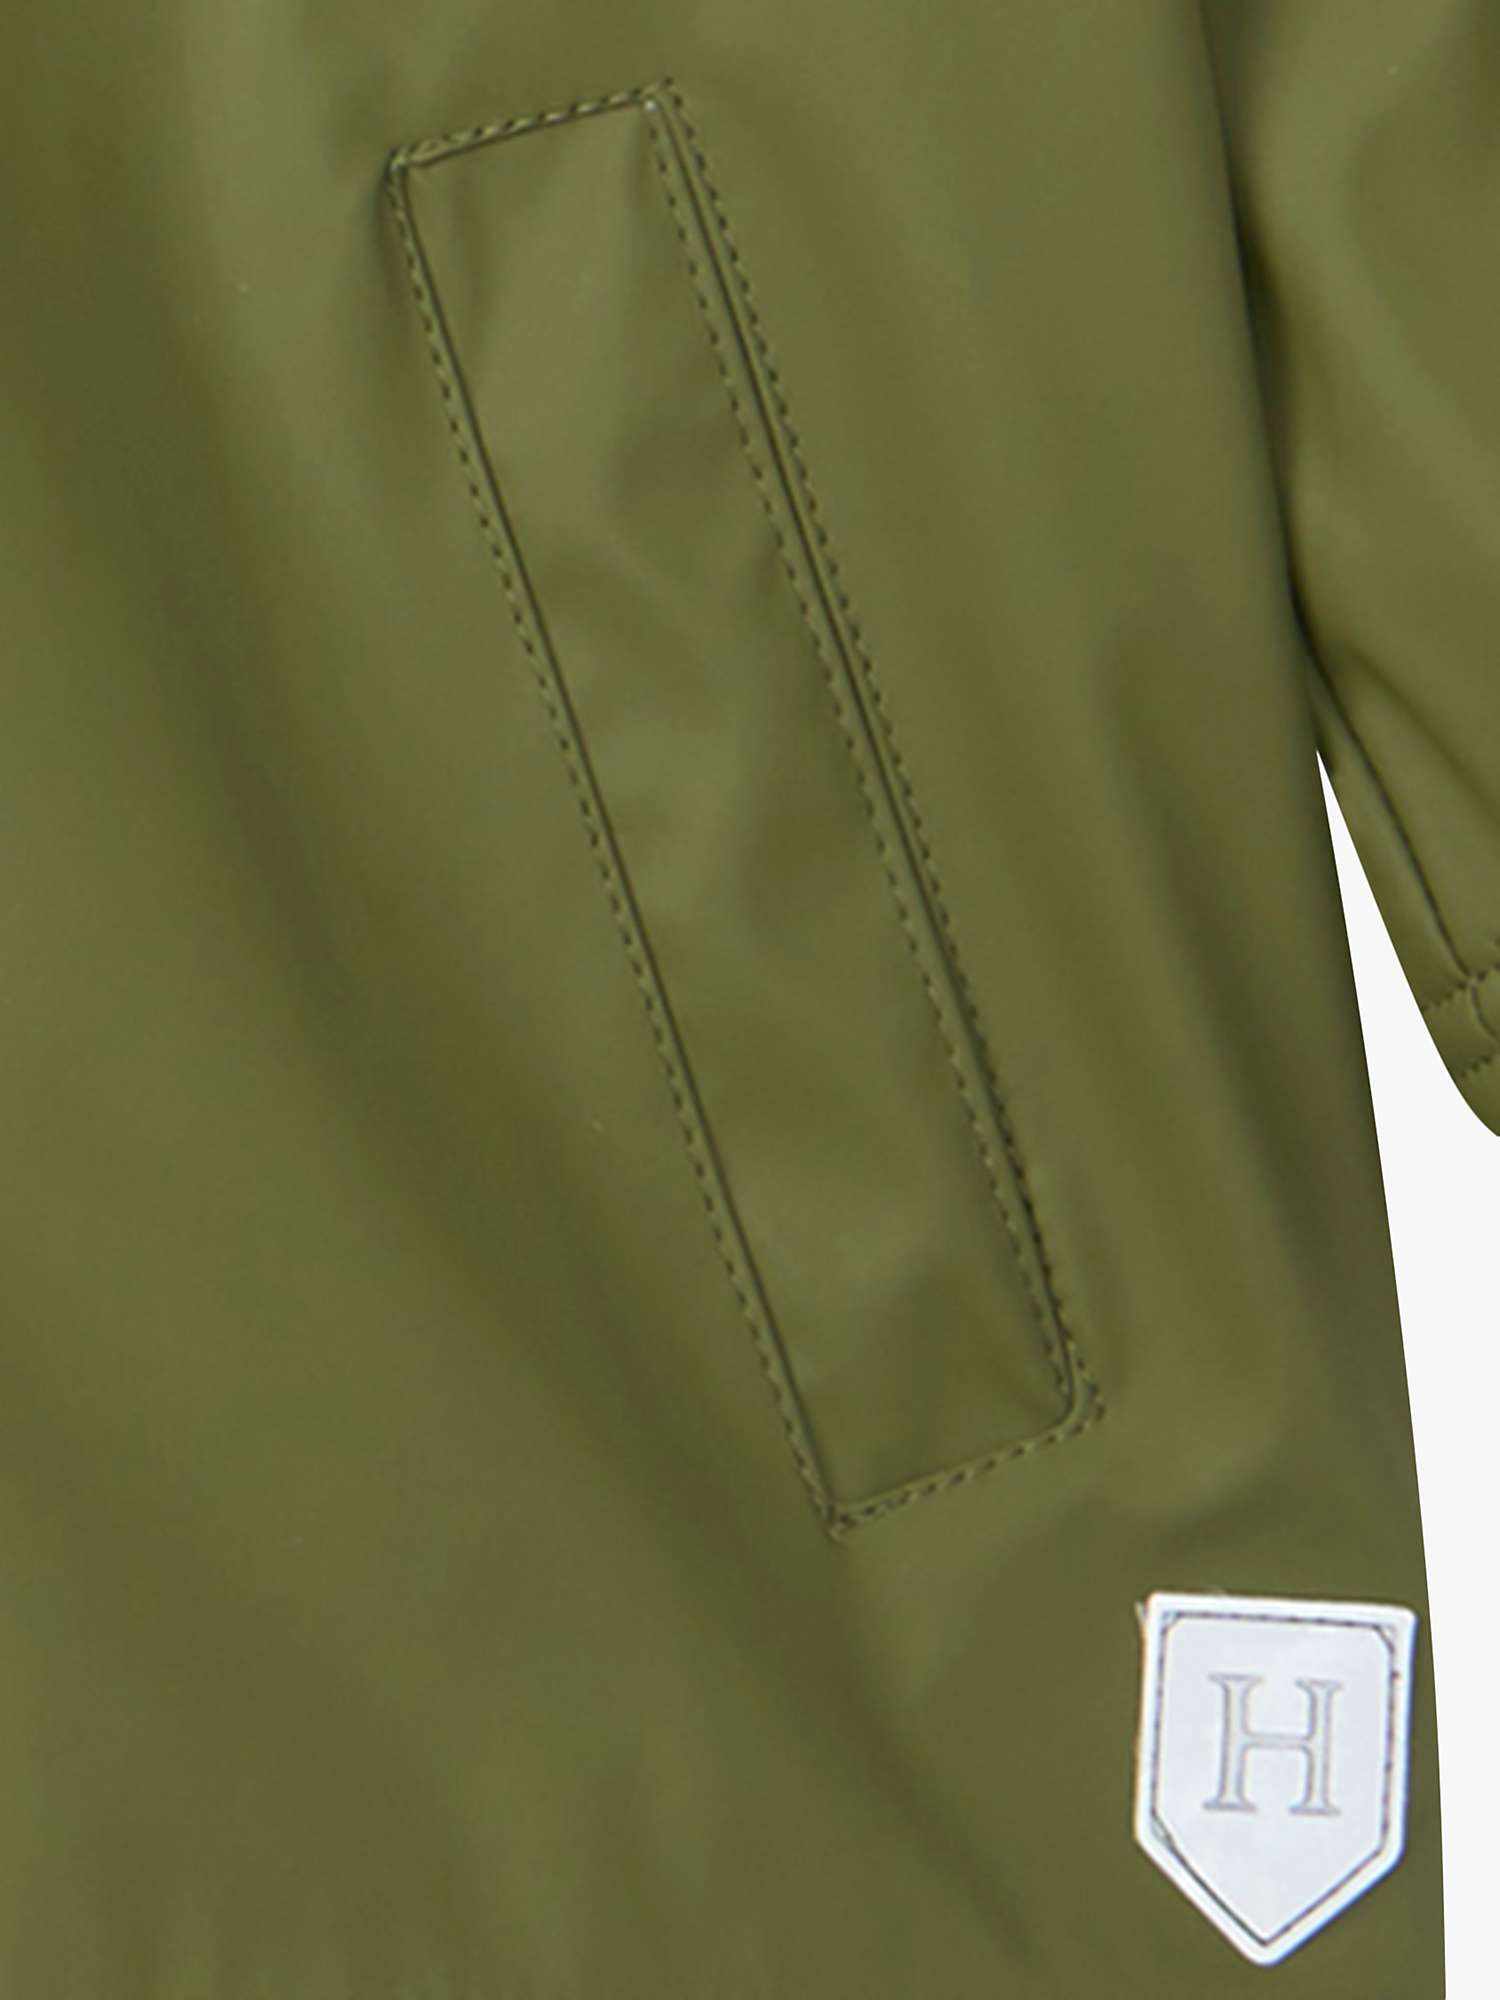 Buy Hatley Kids' Forest Splash Zip Up Hooded Jacket, Loden Green Online at johnlewis.com